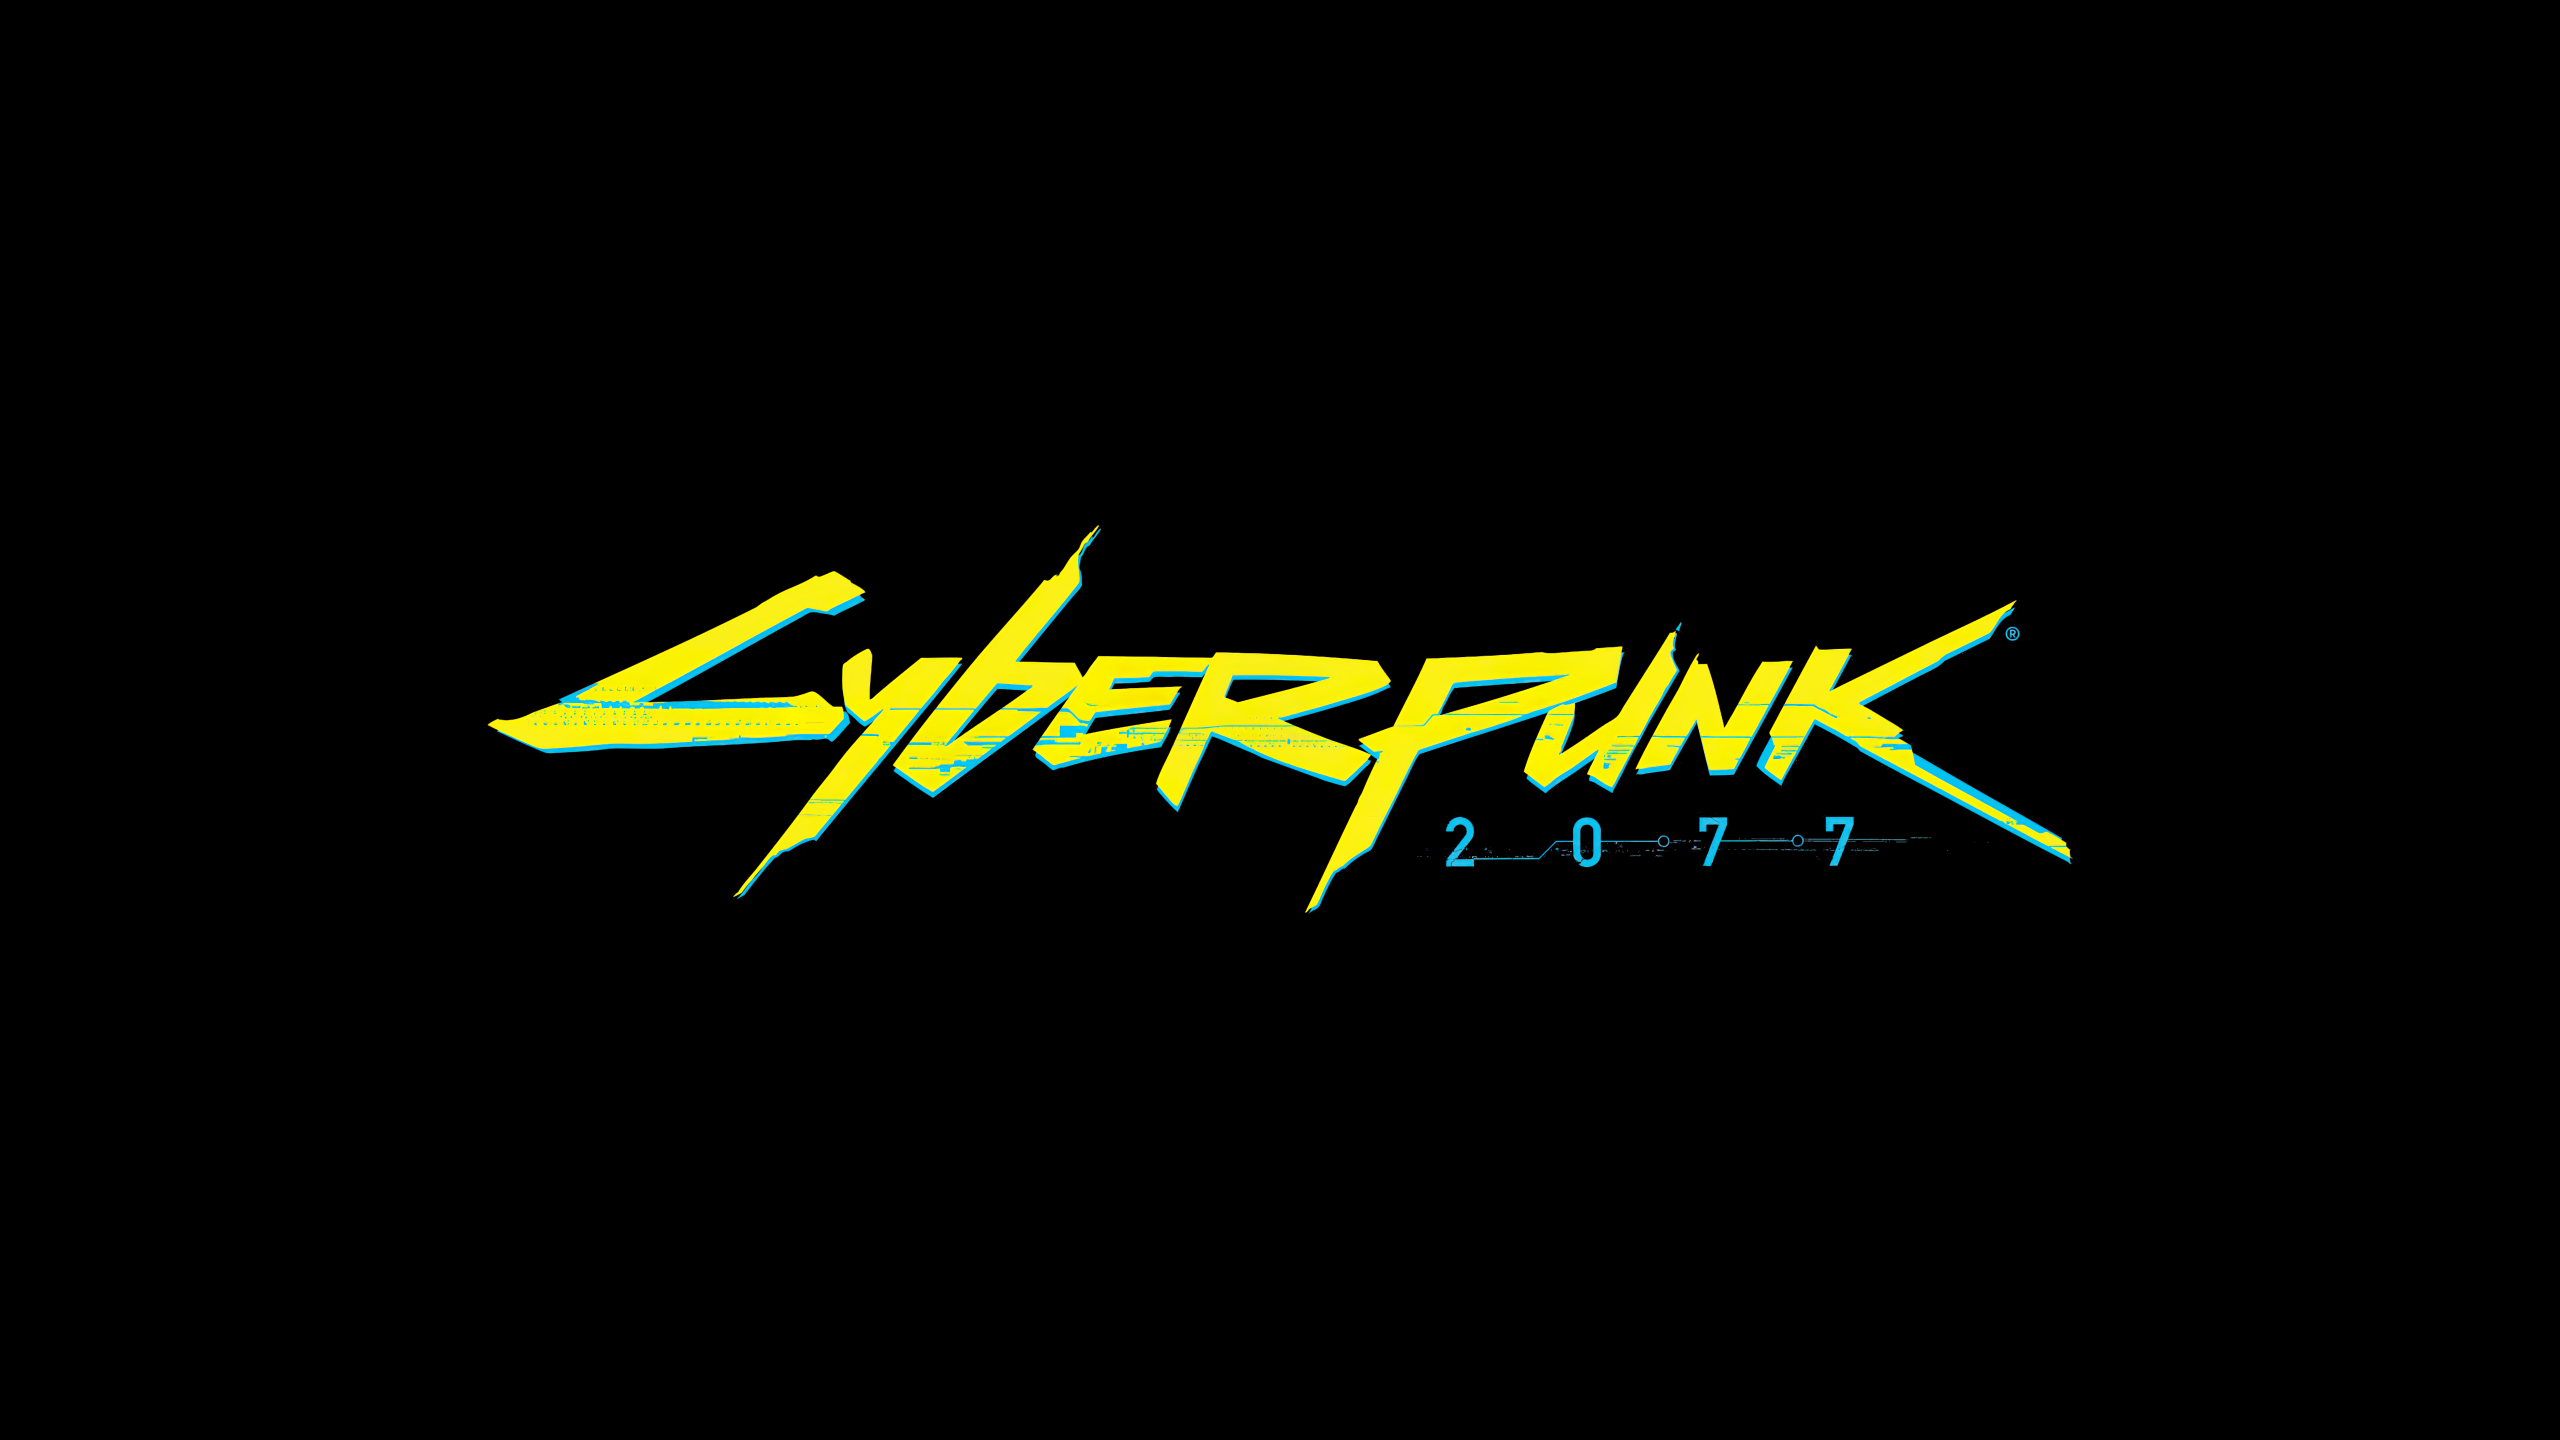 Cyberpunk numbers font фото 73